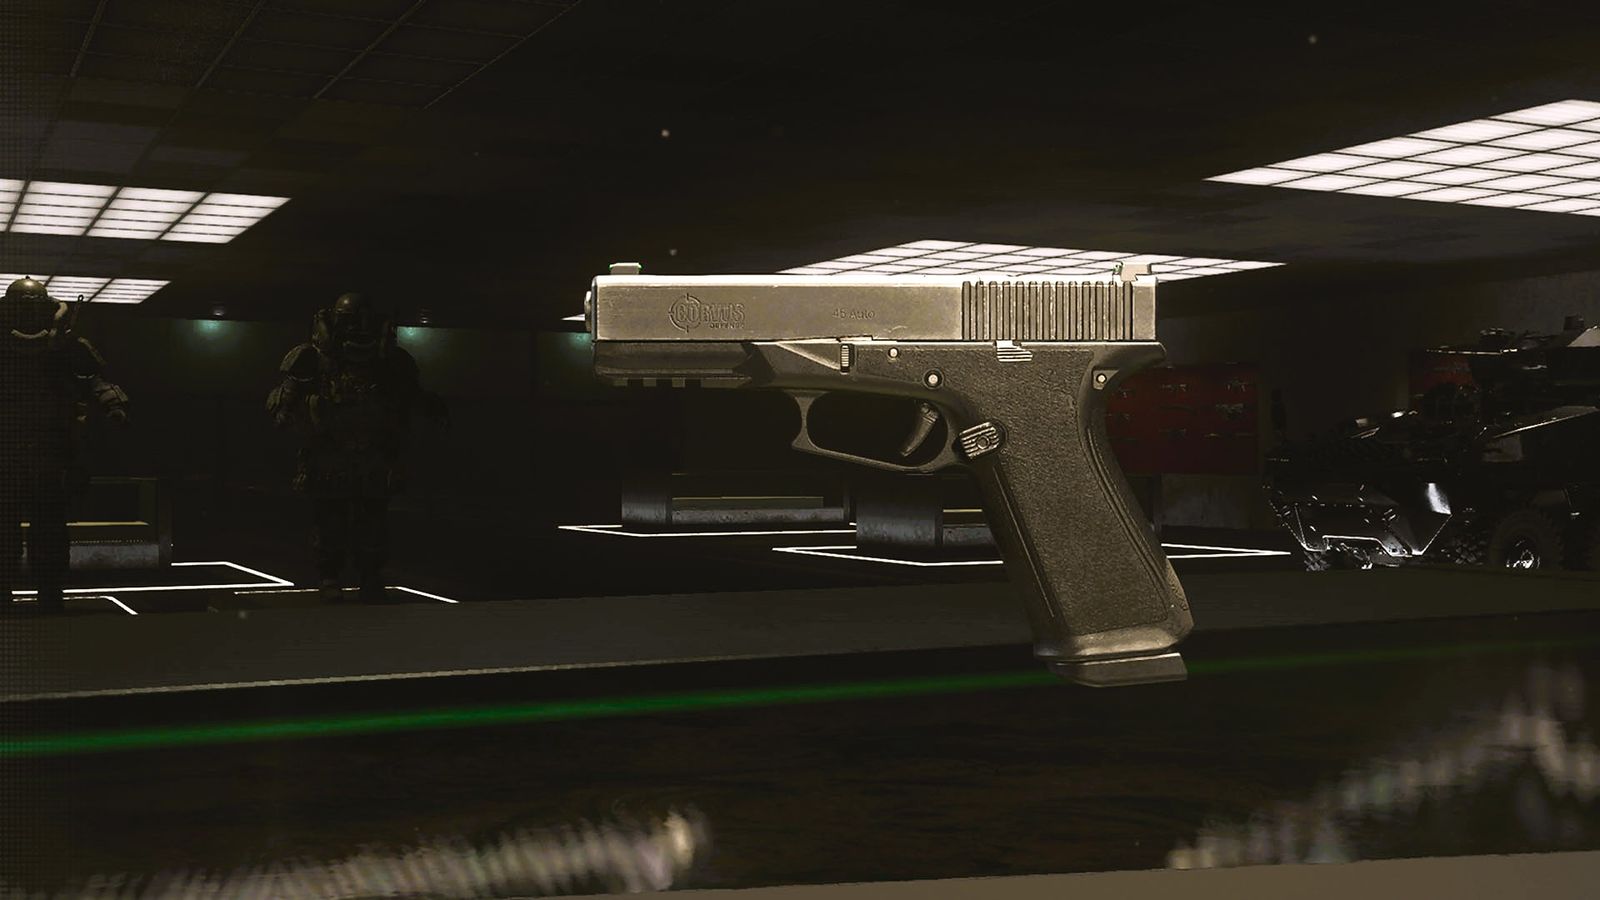 COR-45 semi-auto pistol in Modern Warfare 3